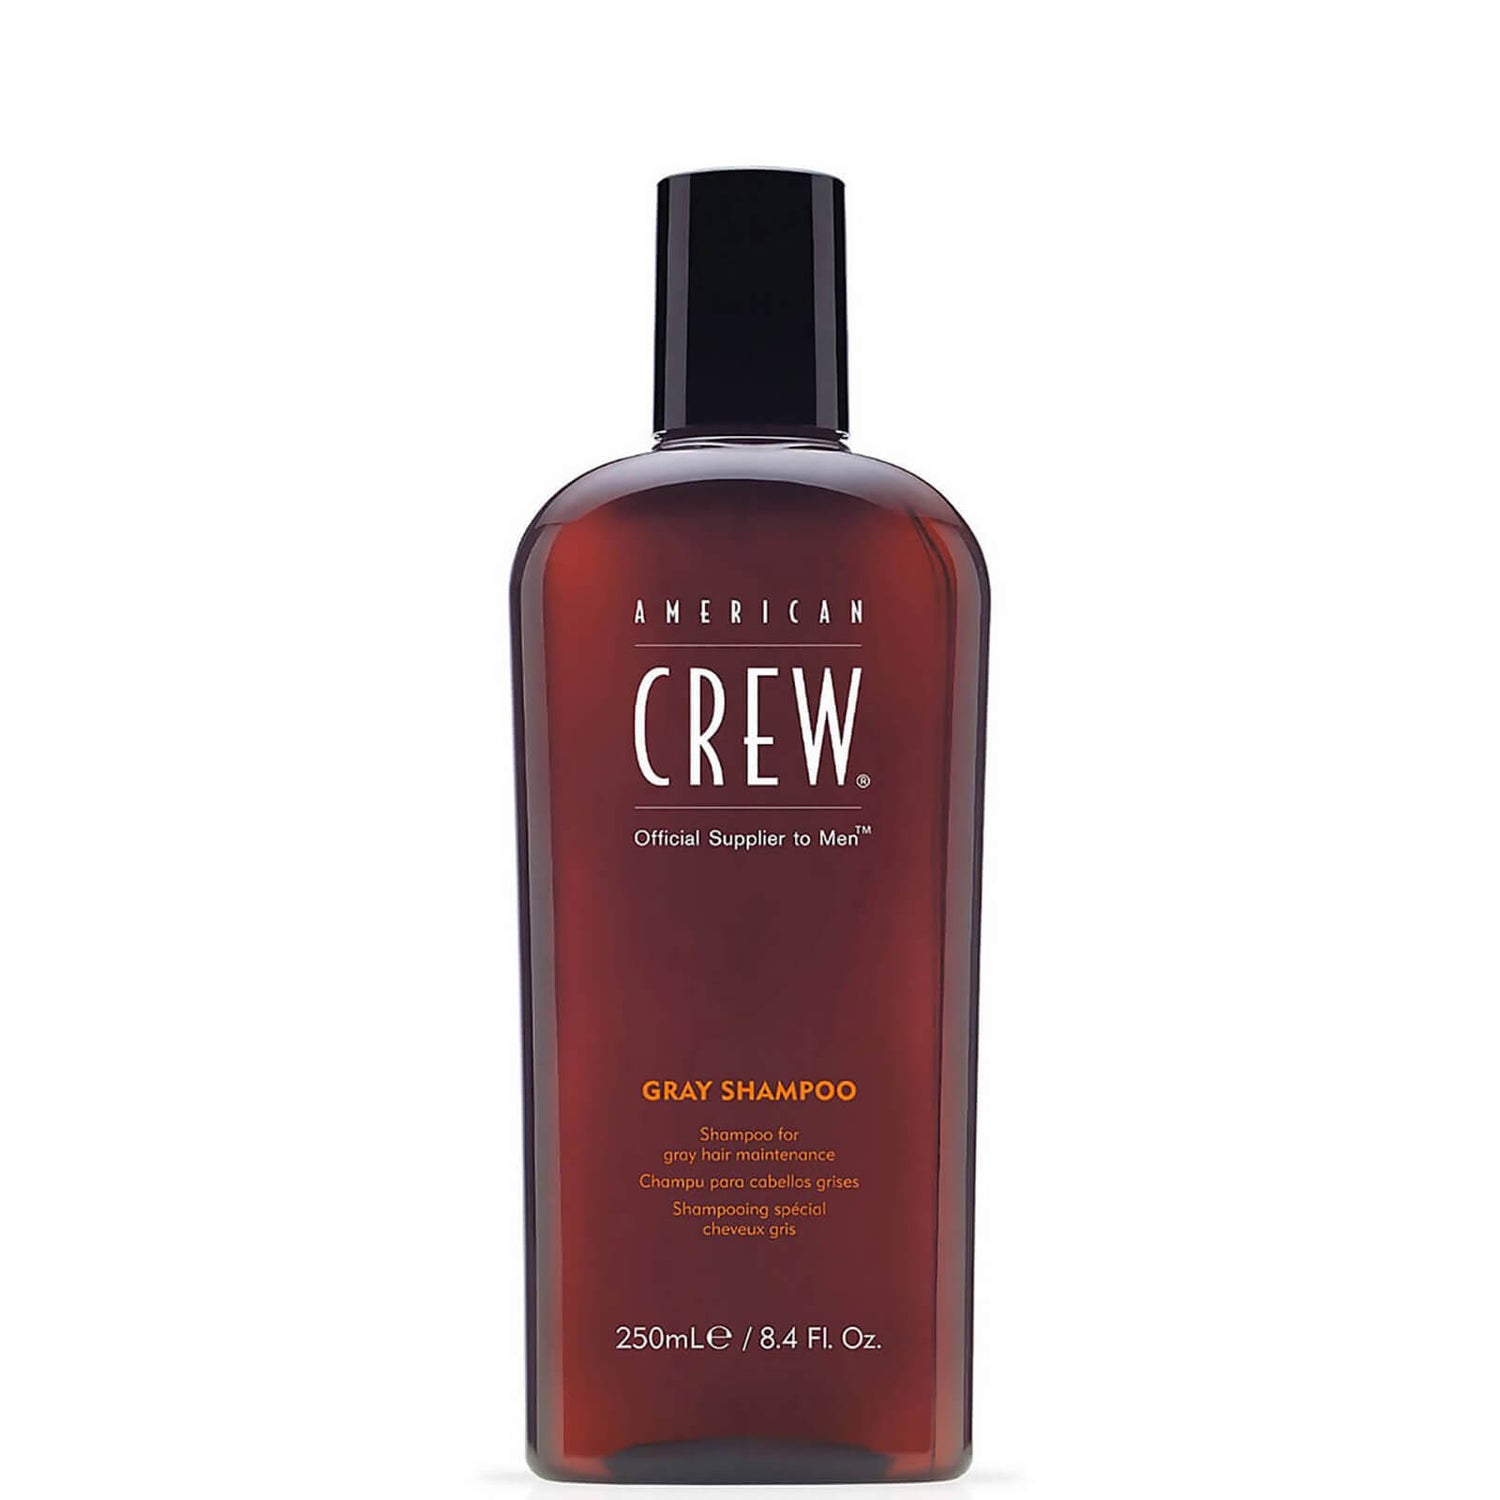 American Crew Shampoo Grigio Classico 250ml